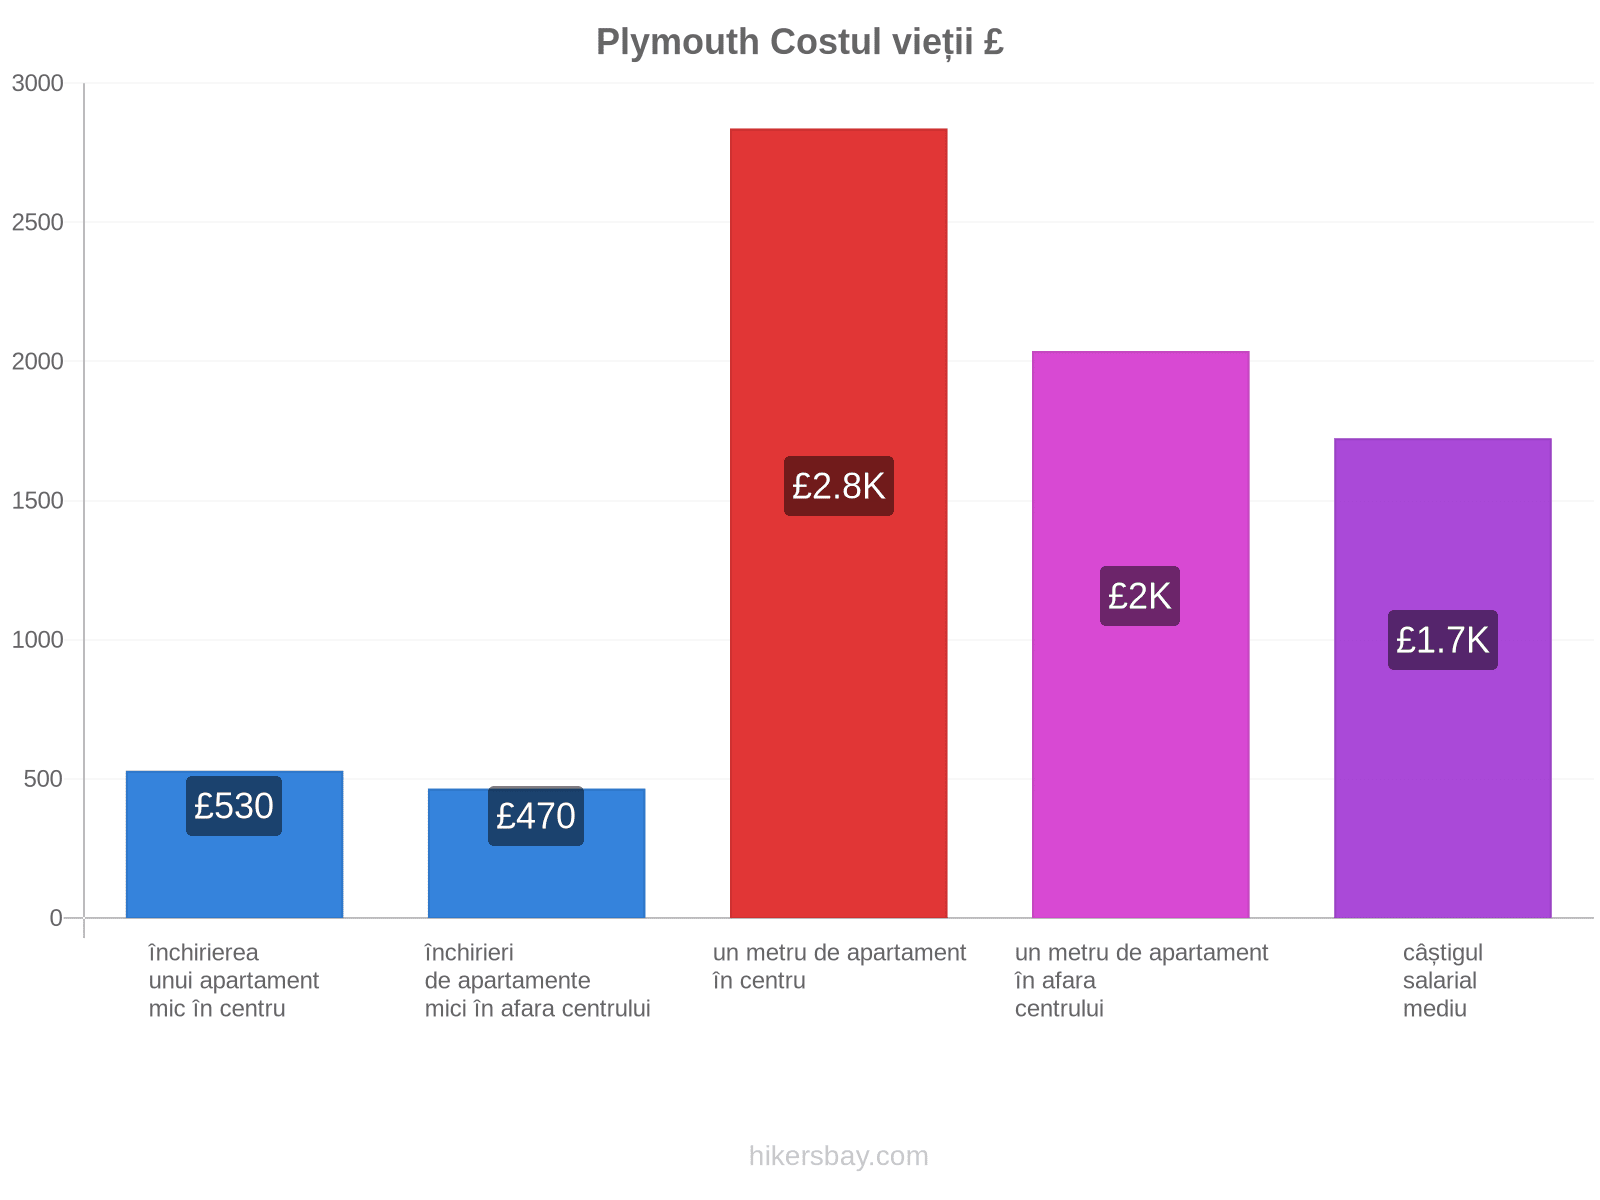 Plymouth costul vieții hikersbay.com